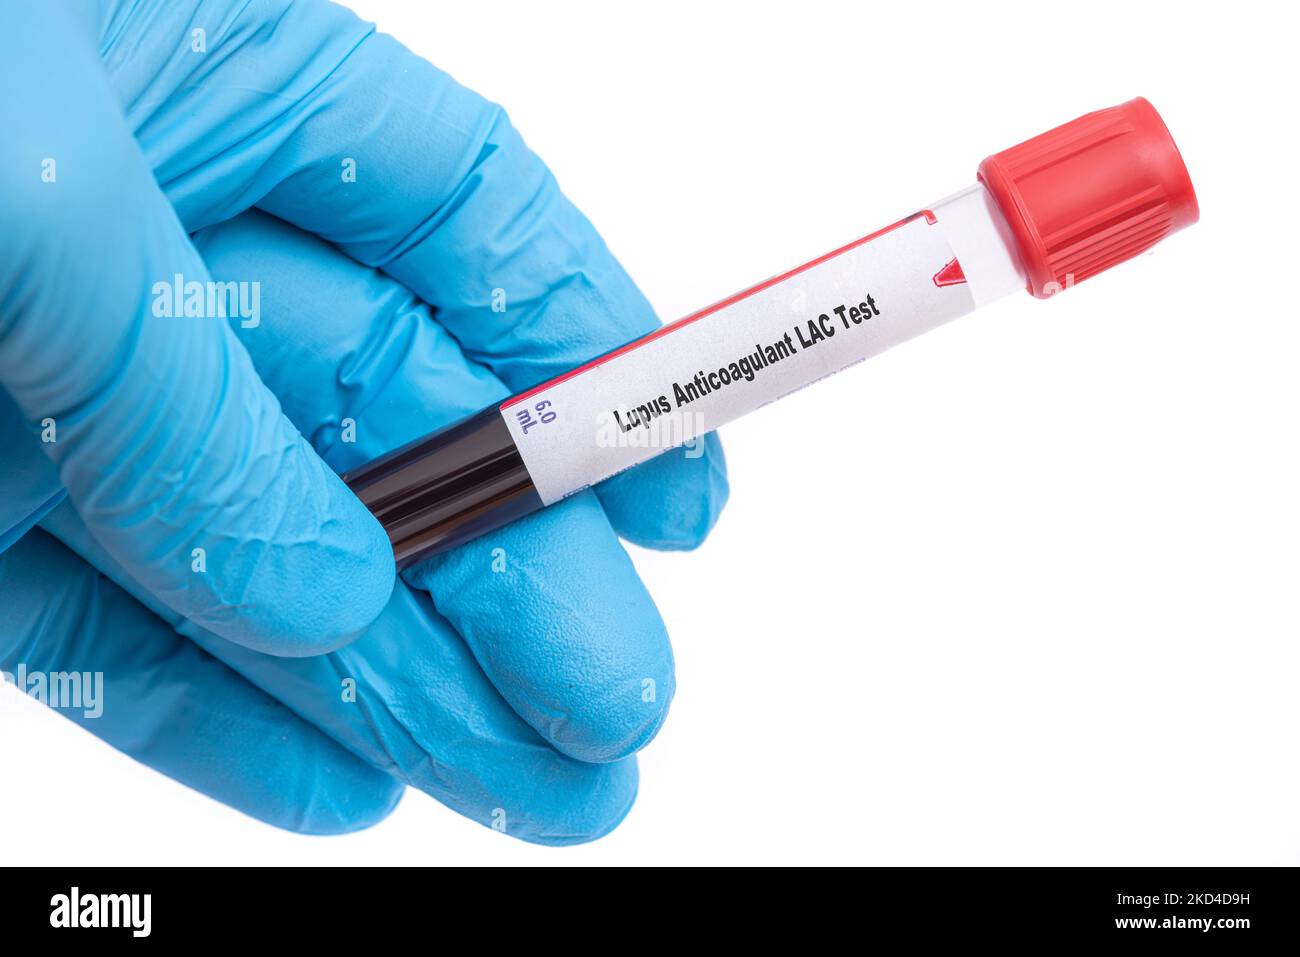 Test anticoagulant lupus, image conceptuelle Banque D'Images